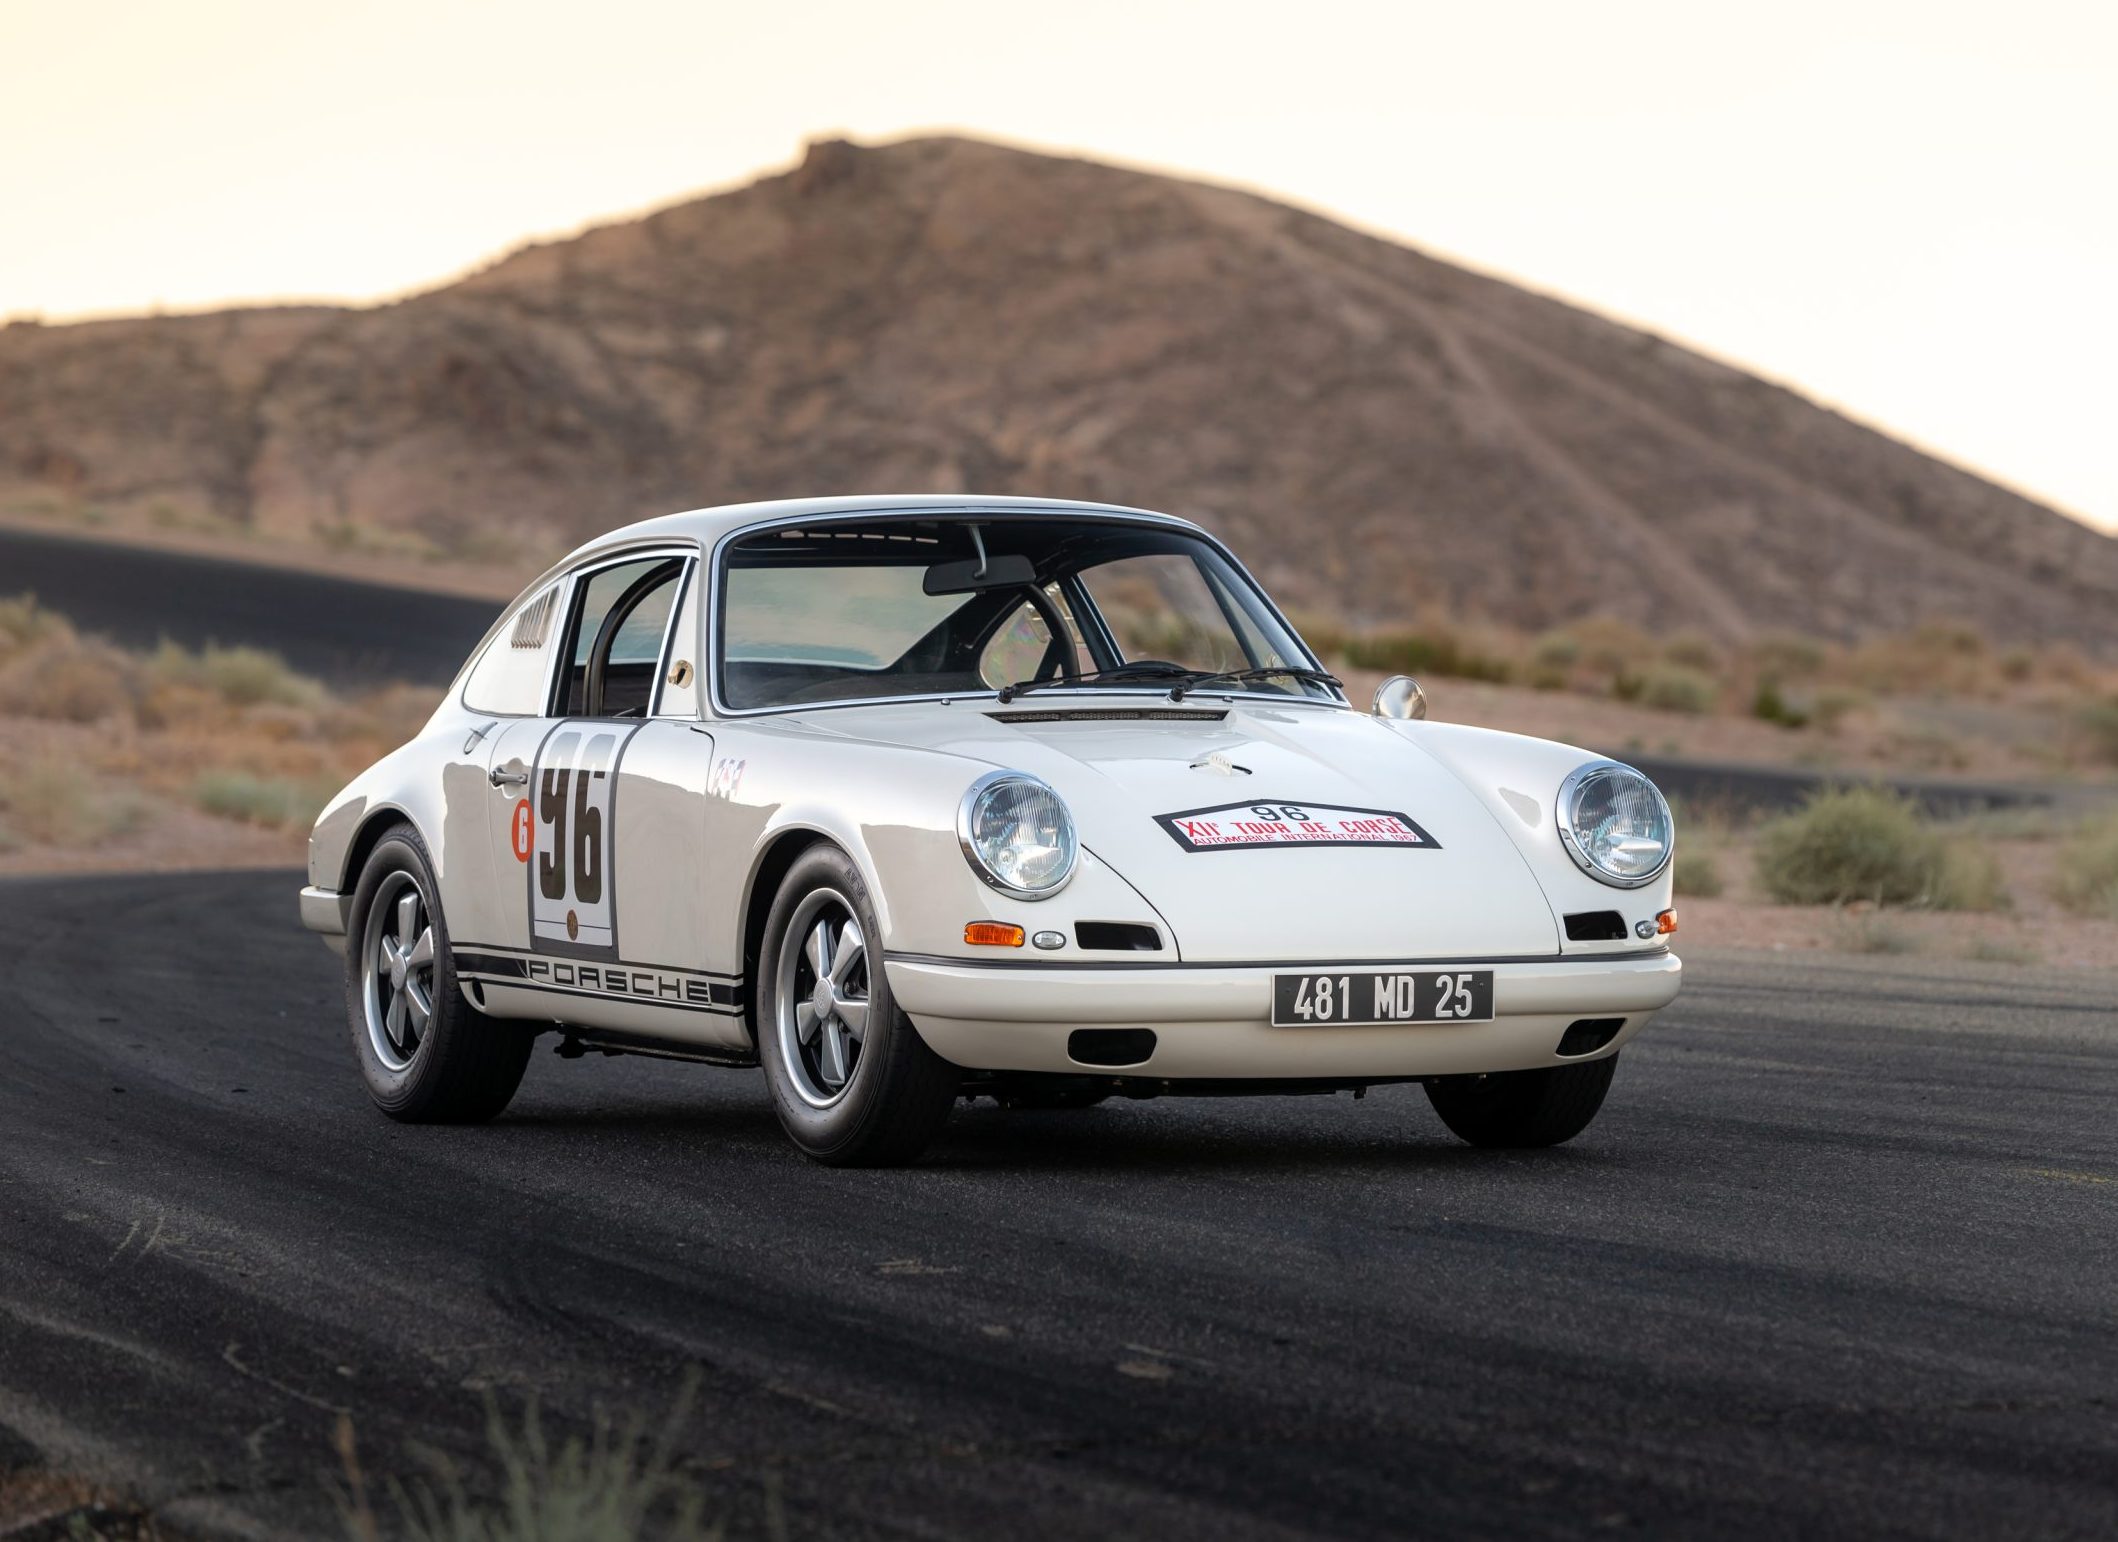 Car Of The Day: 1967 Porsche 911 R